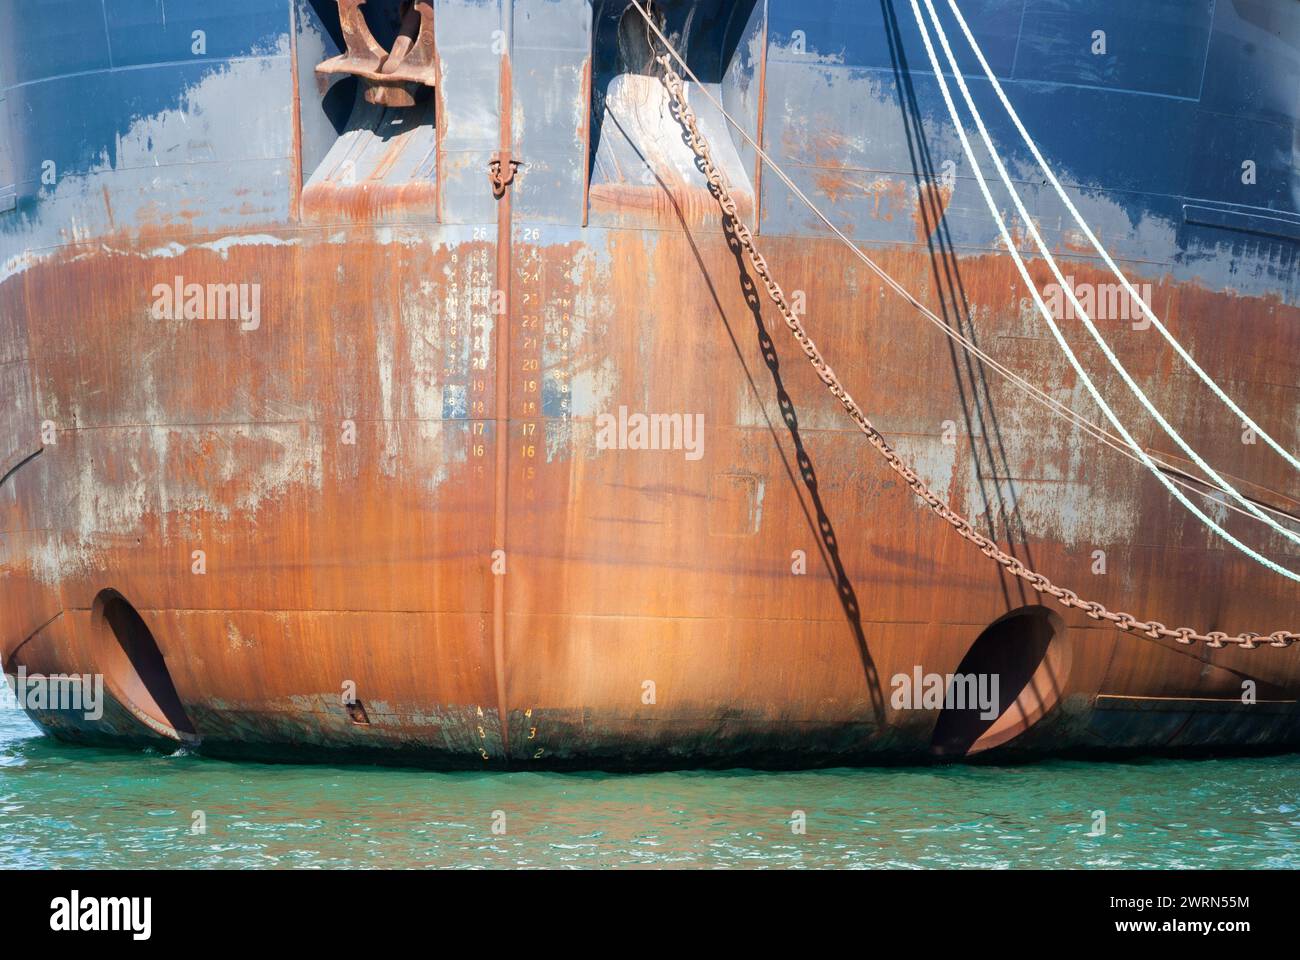 Una vista frontal de un carguero de los Grandes Lagos en su amarre en Toronto, Canadá, que muestra detalles de la línea plimsoll y los propulsores de proa Foto de stock